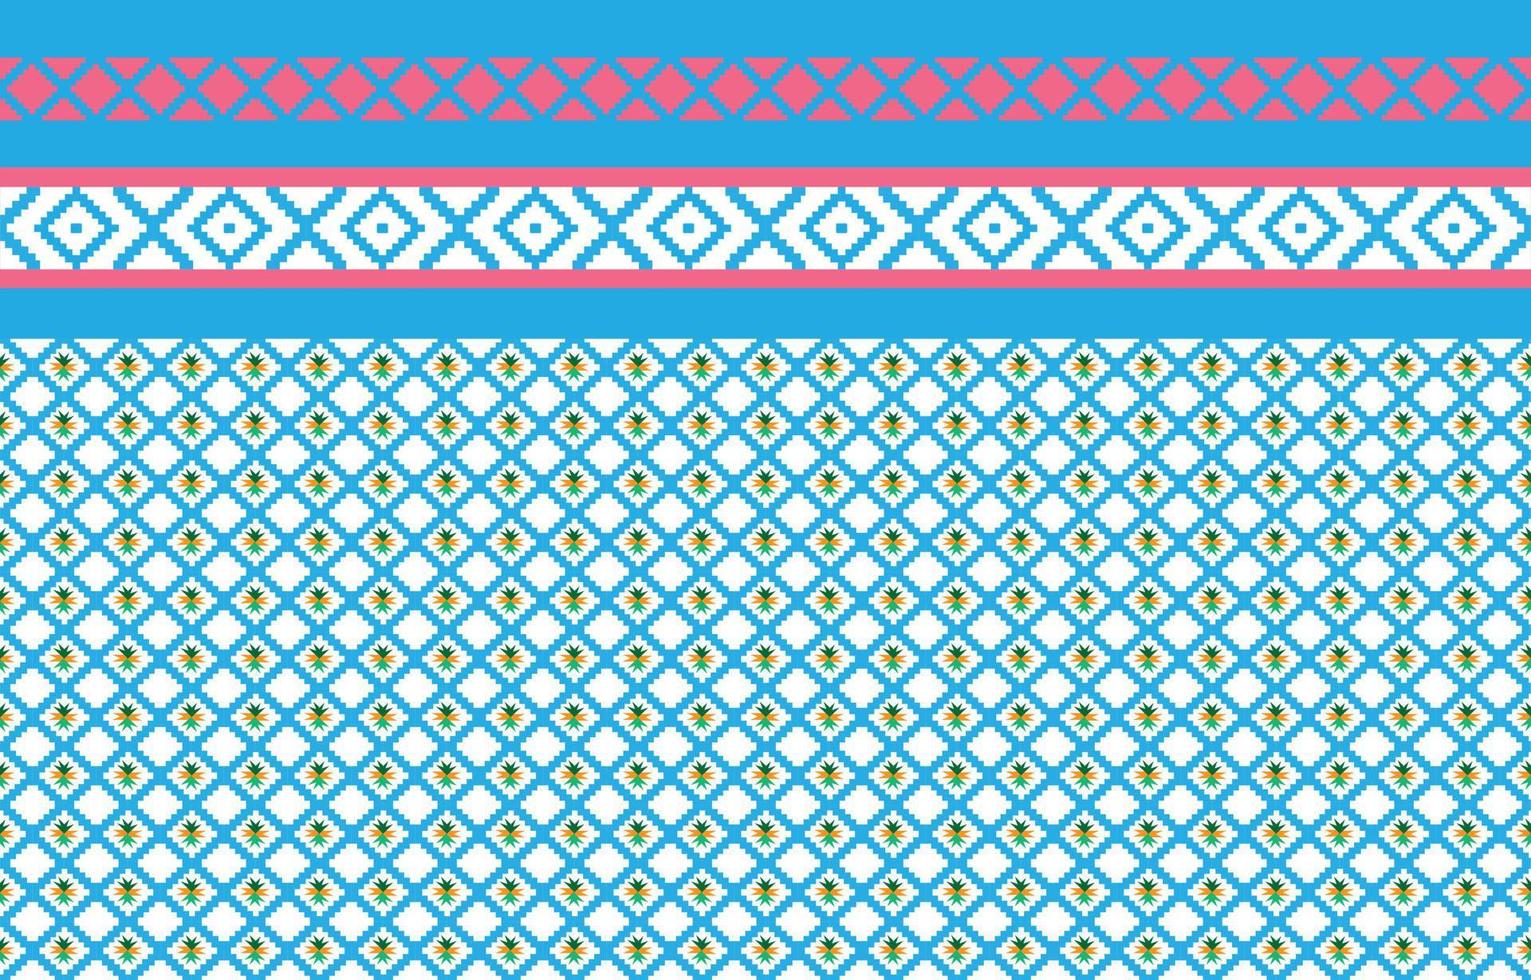 patrones geométricos y tribales abstractos, diseño de uso, patrones de tela local, diseño inspirado en las tribus indígenas. ilustración vectorial geométrica vector